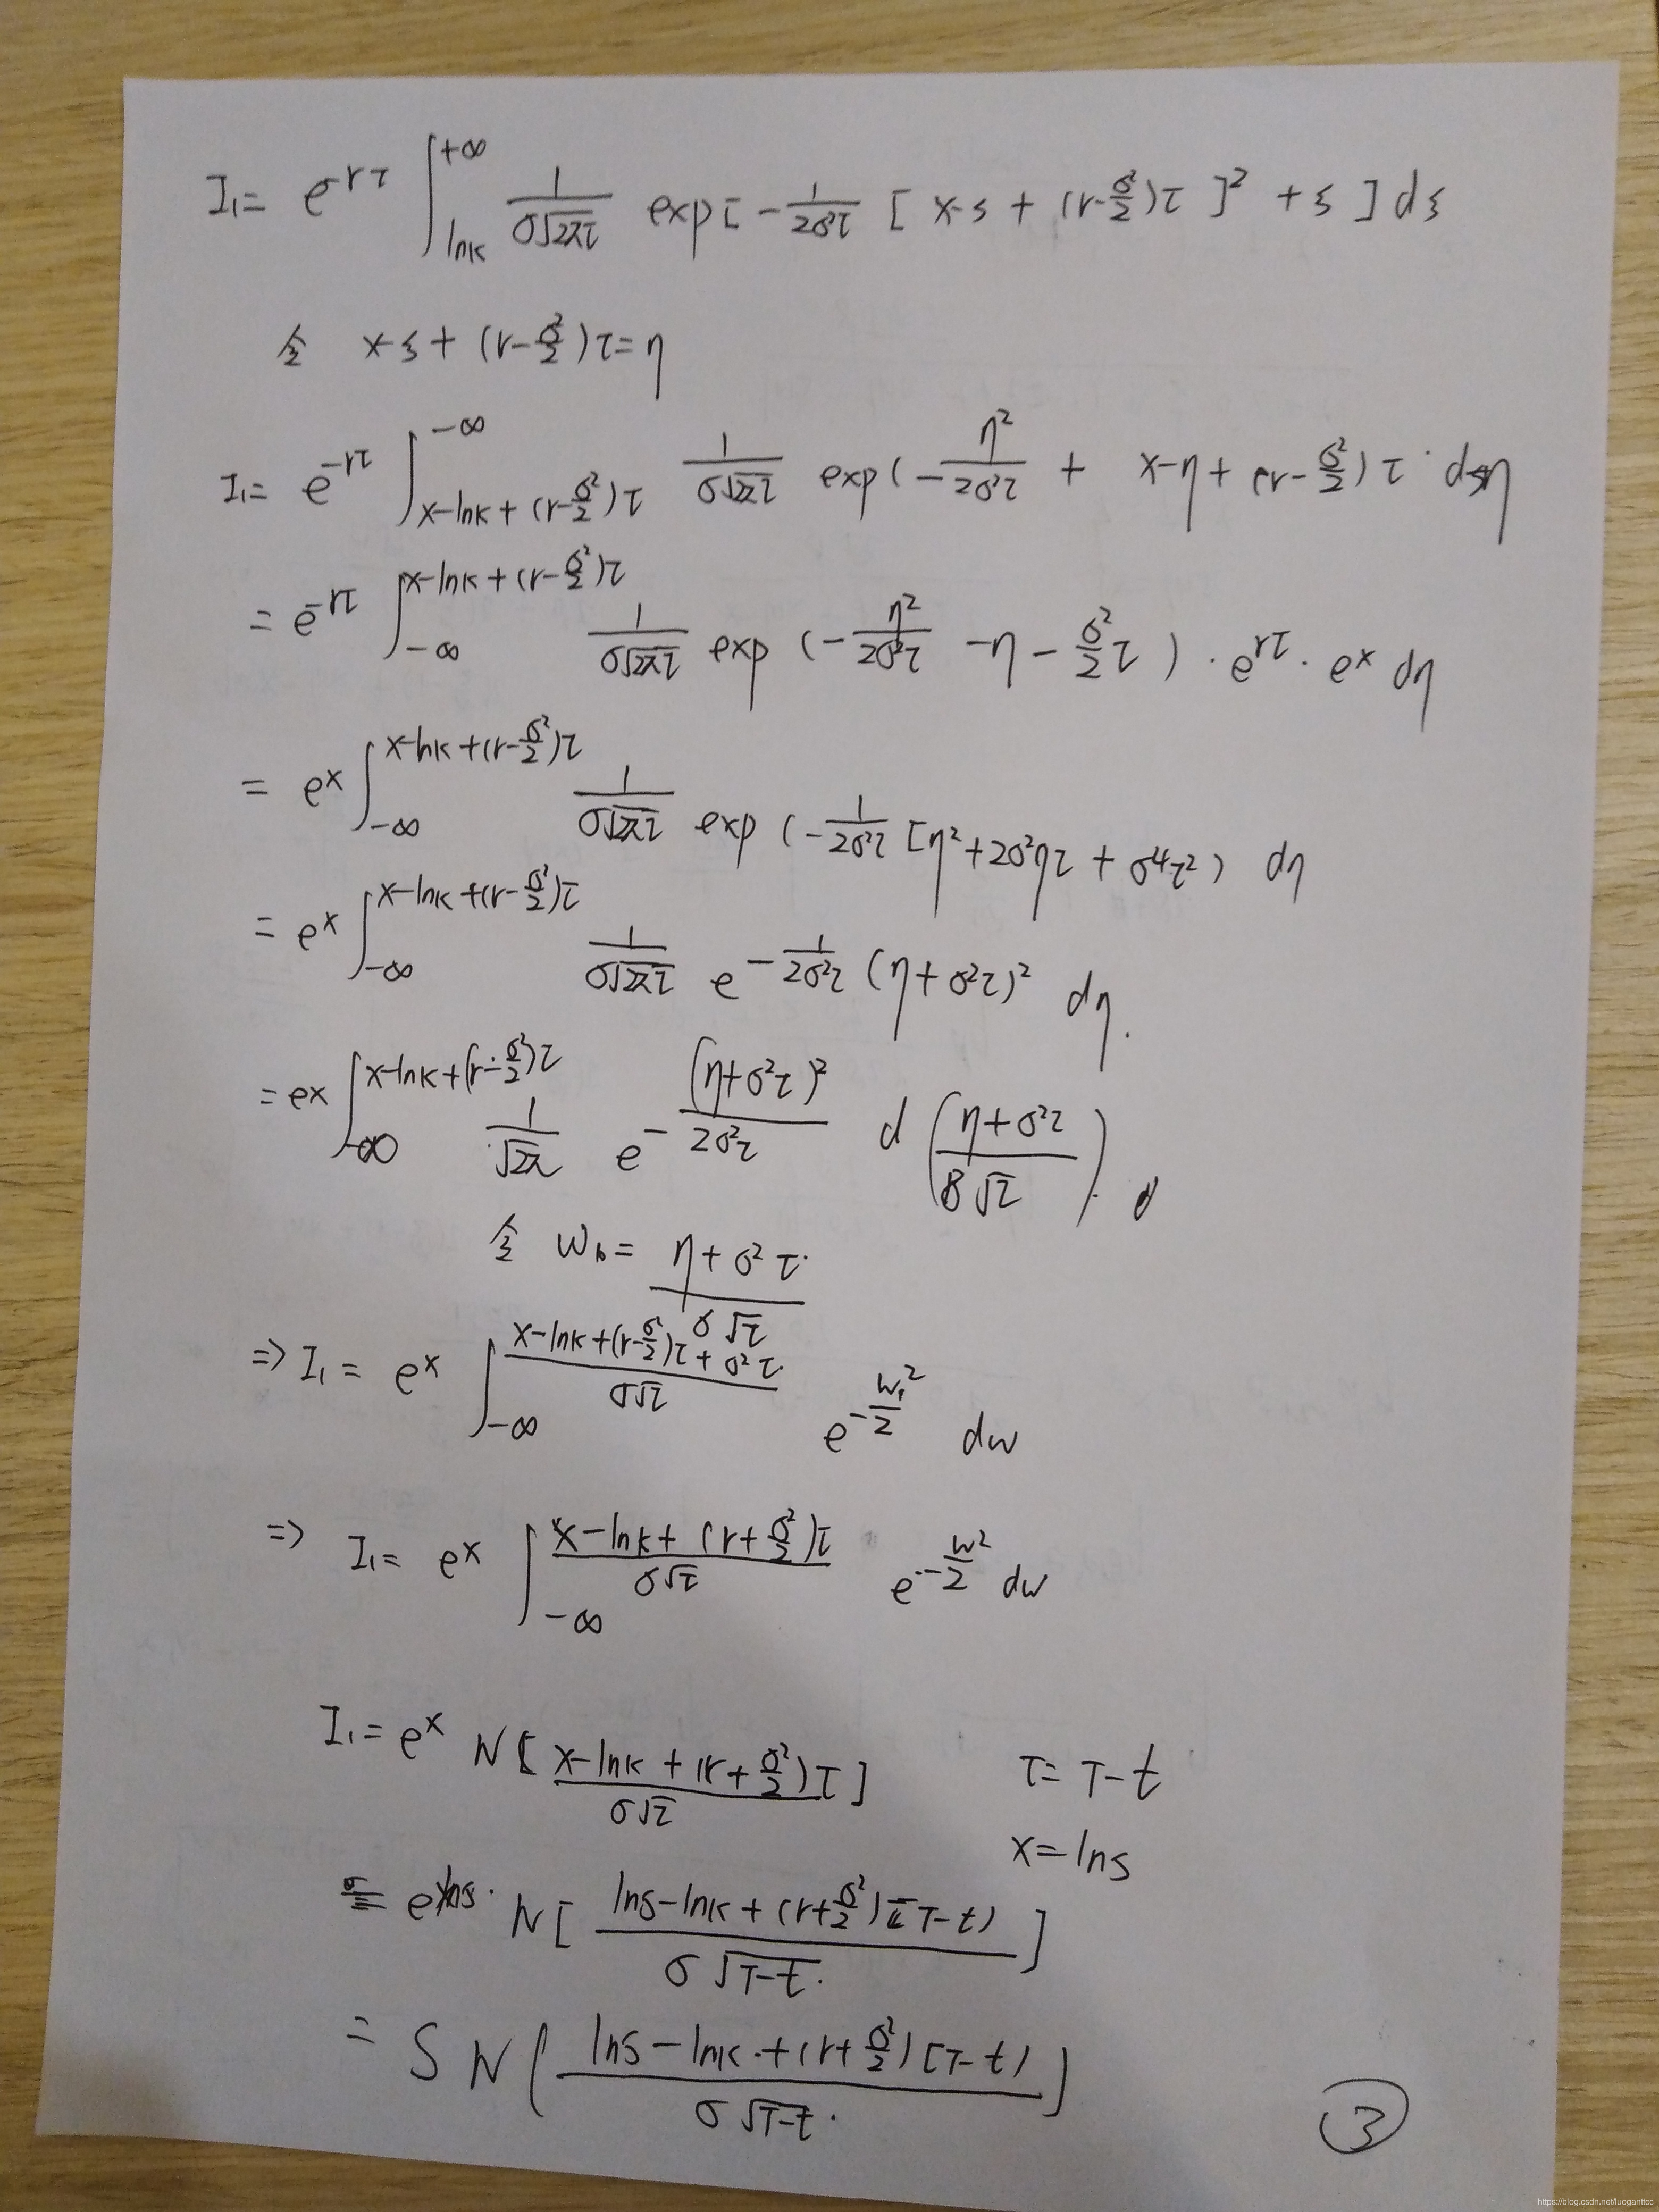 布莱克斯科尔斯模型（五)  方程求解过程_其它_05